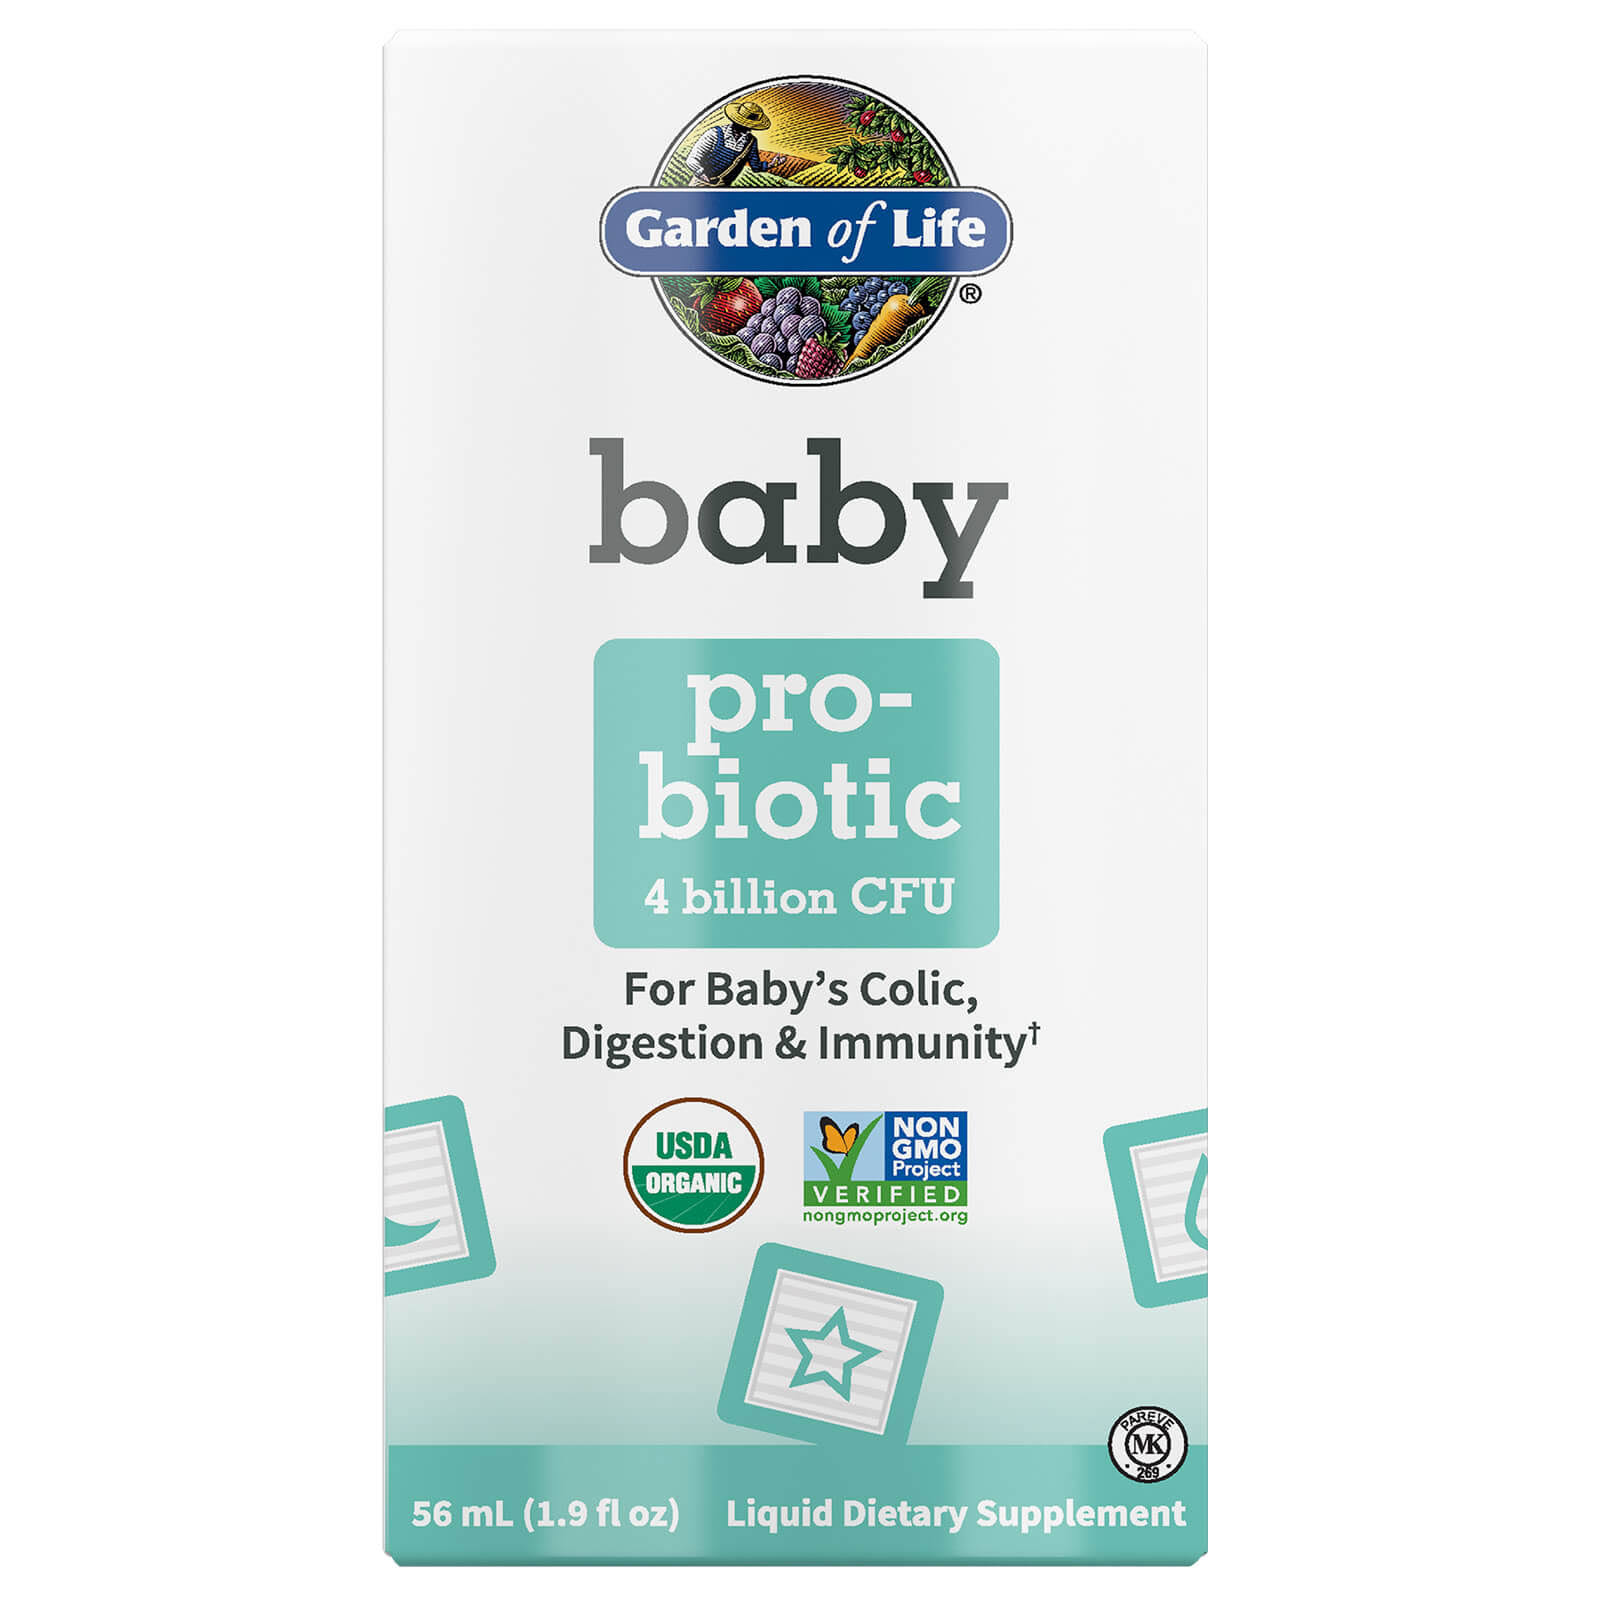 Garden of Life - Baby Probiotic, 4 Billion CFU - 1.9 fl. oz (56 ml)